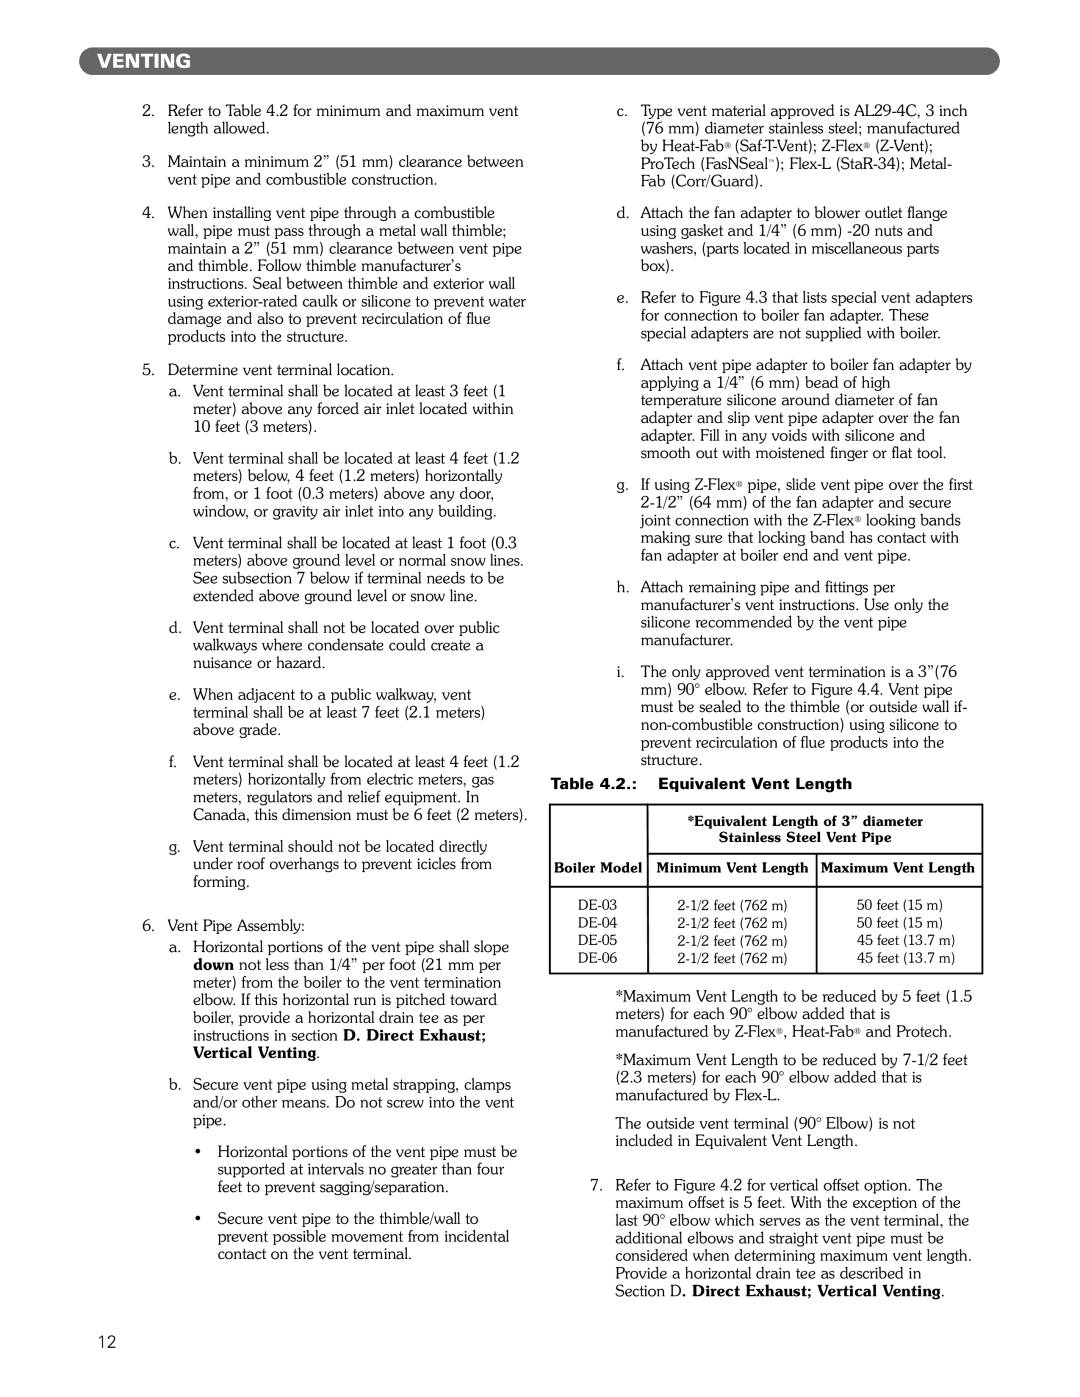 PB Heat DE manual Venting, 2. Equivalent Vent Length 